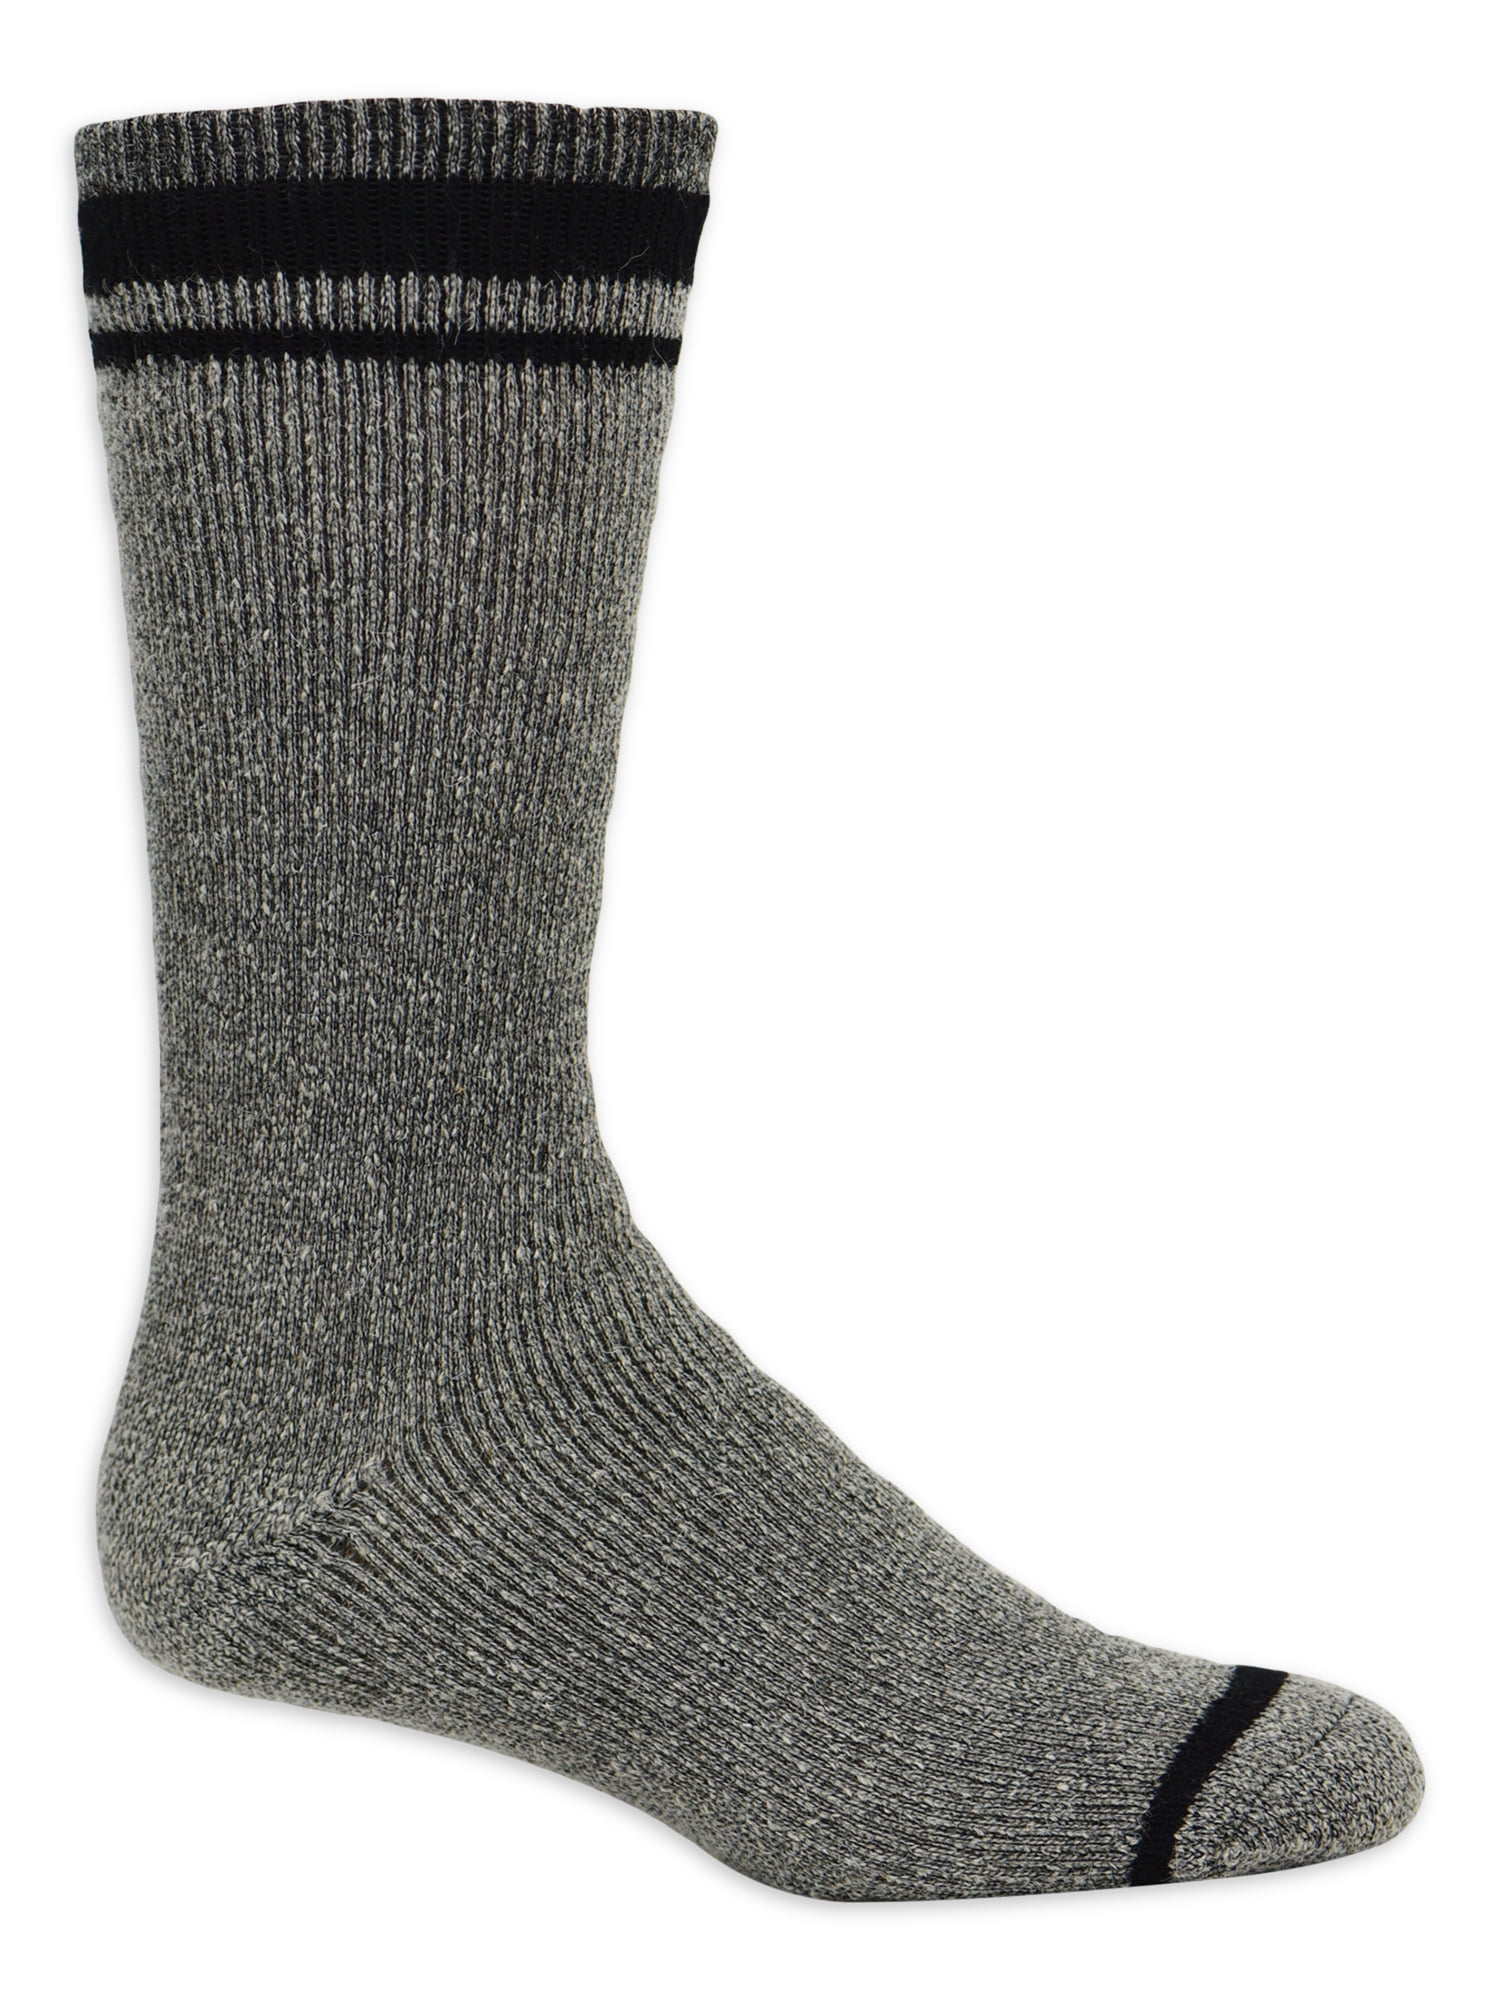 Kodiak Mens Men Cold Weather Socks 3 Pack Size 7-12 Multi-Color Variations New 